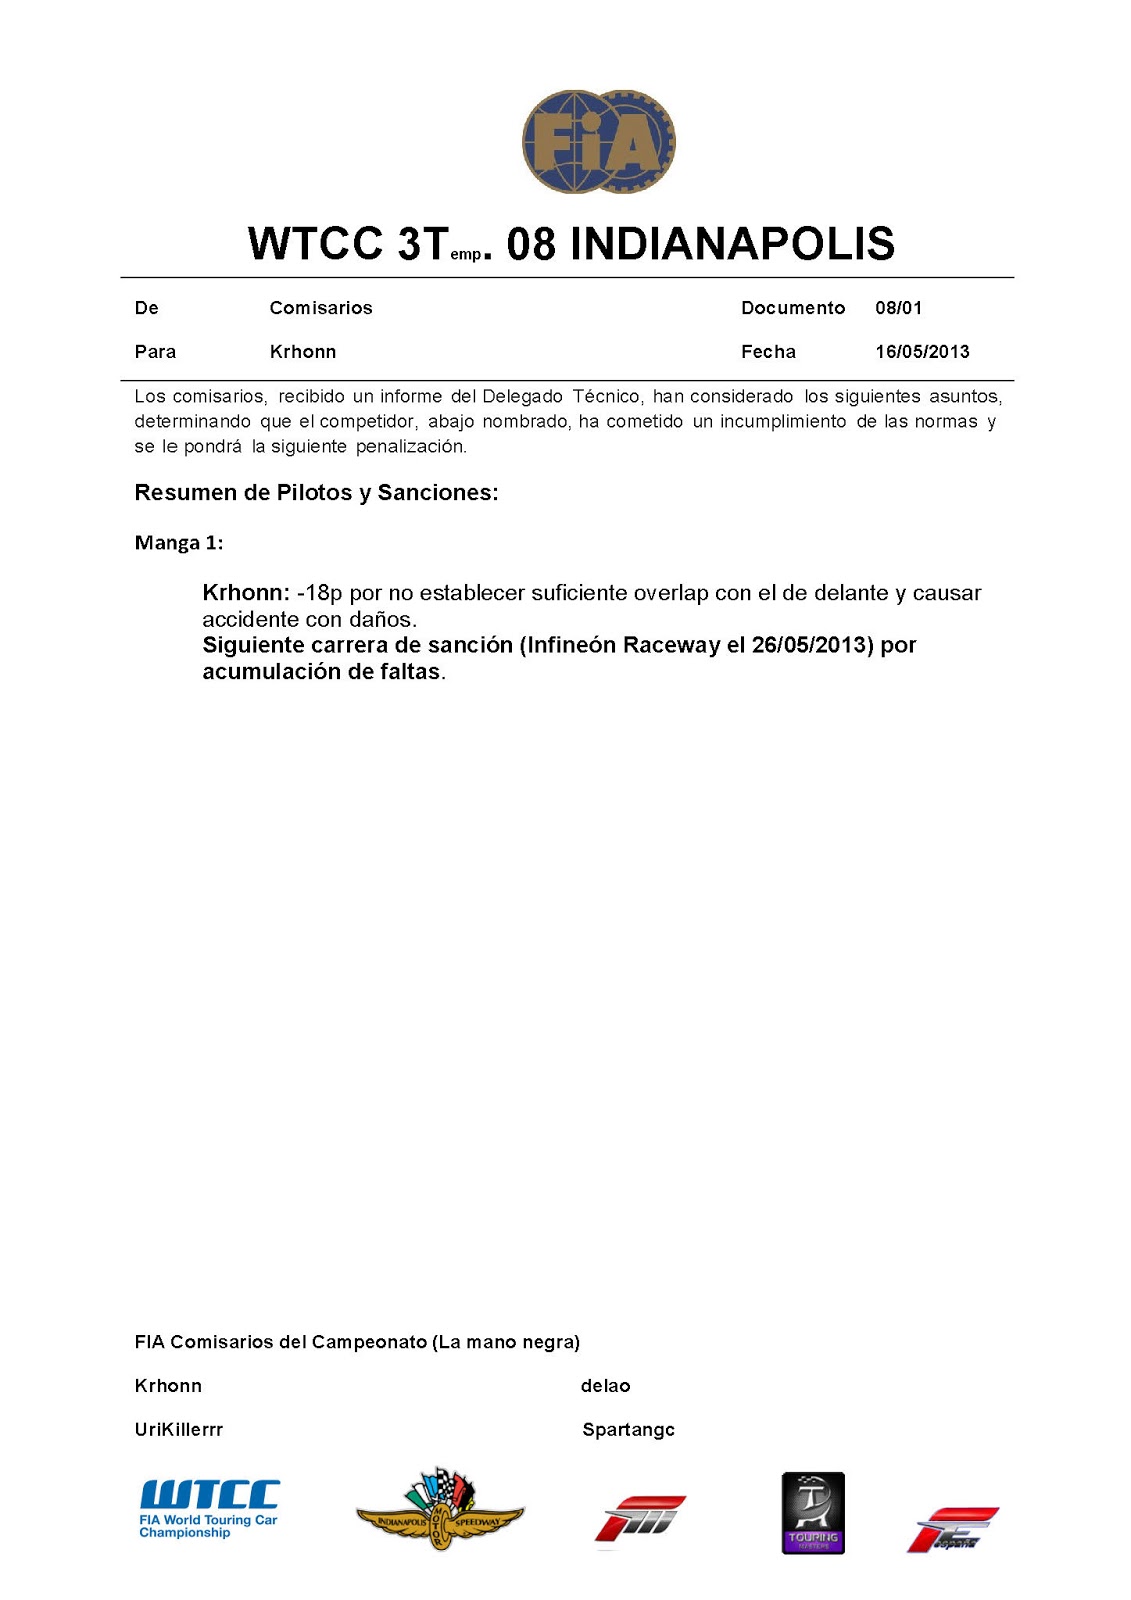 [WTCC] 3a Temp. Revisiones y sanciones Incidentes+Indianapoliss